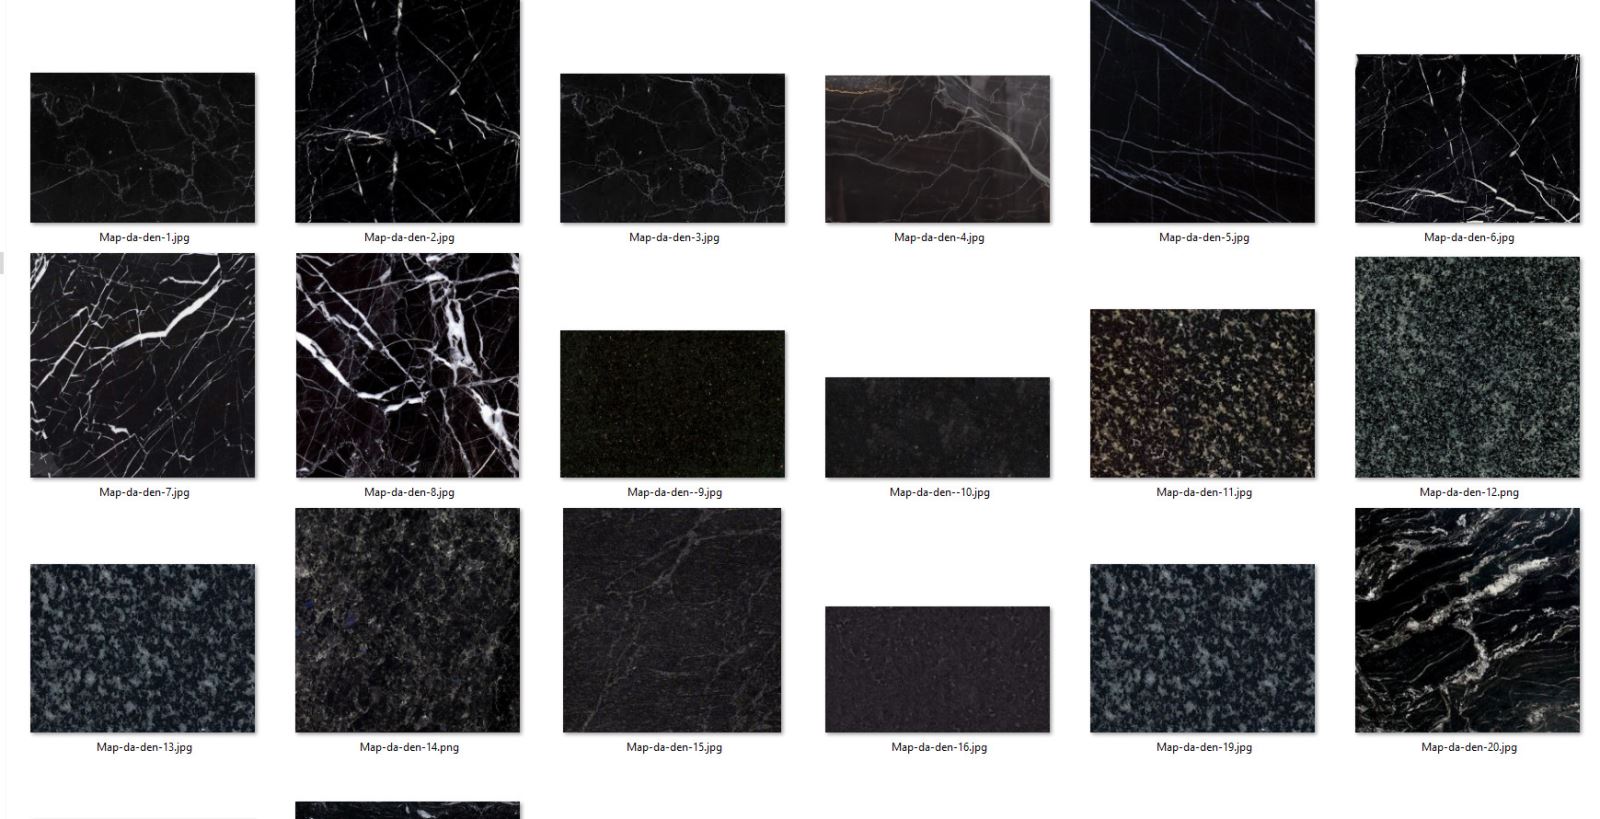 Các mẫu map đá Granite đen